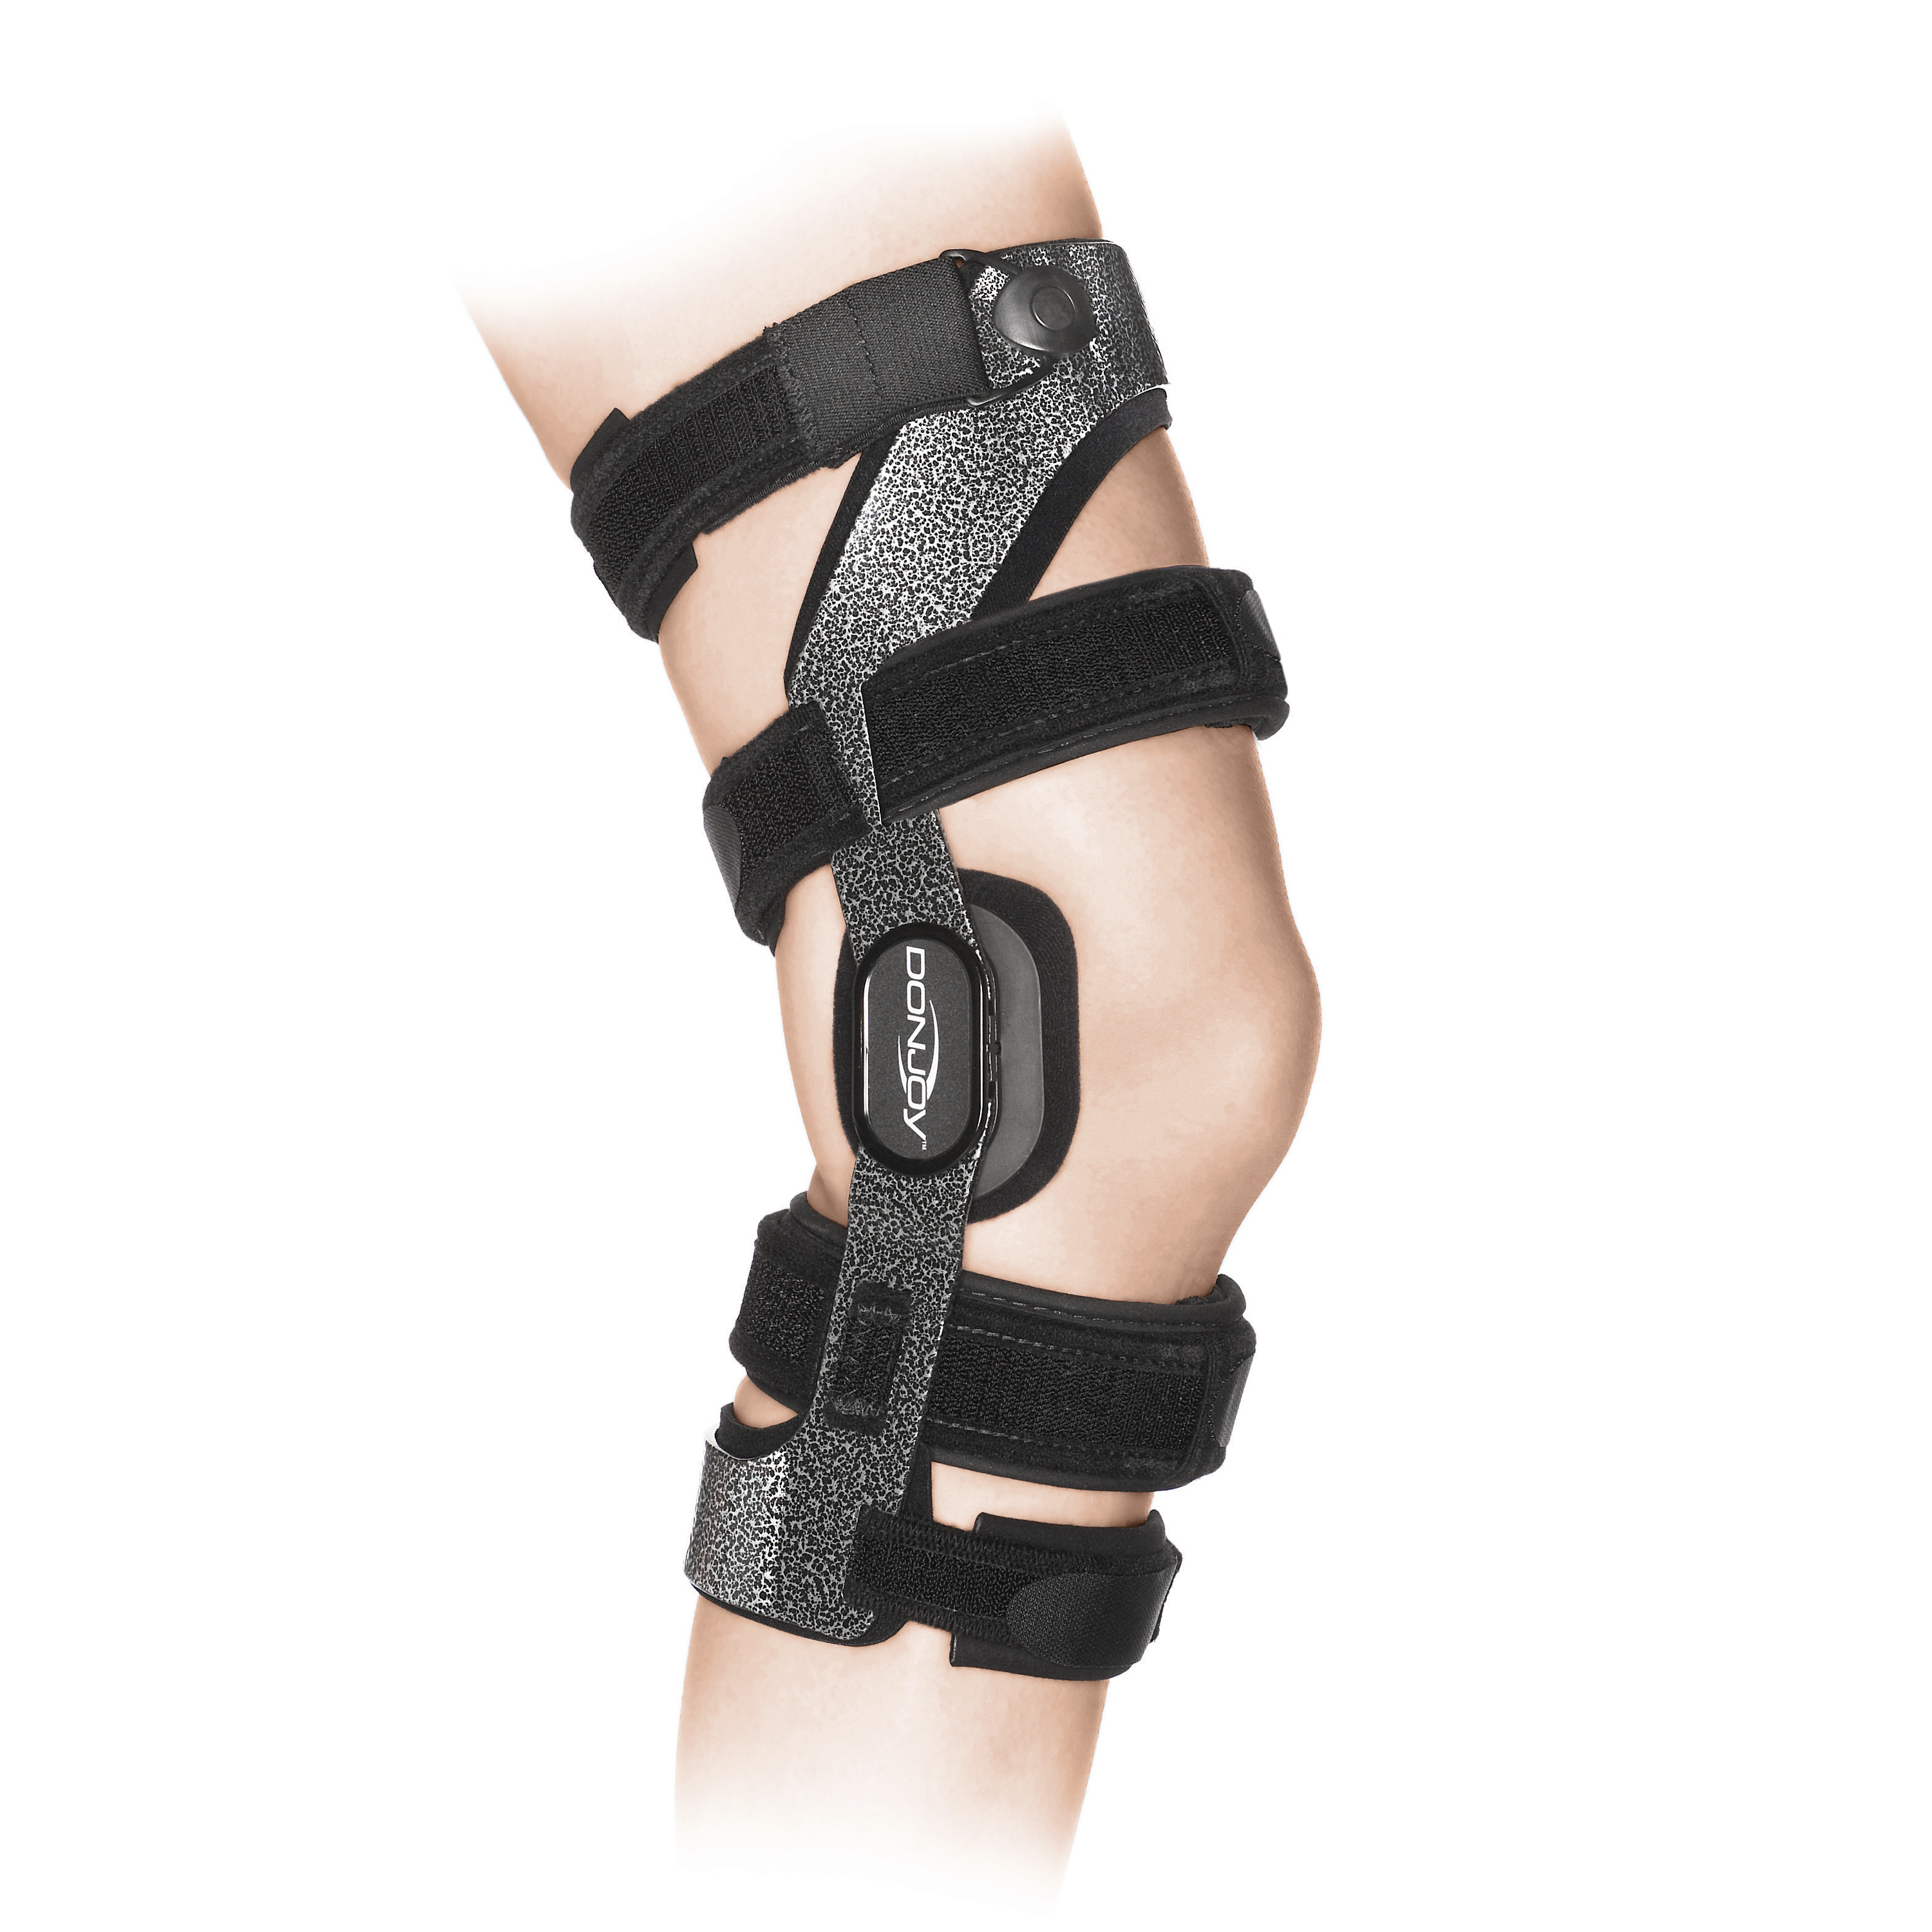 Produktbild DONJOY® Armor CI, Rahmenorthese zur Führung und Stabilisierung des Kniegelenks mit Extensions-/Flexionsbegrenzung